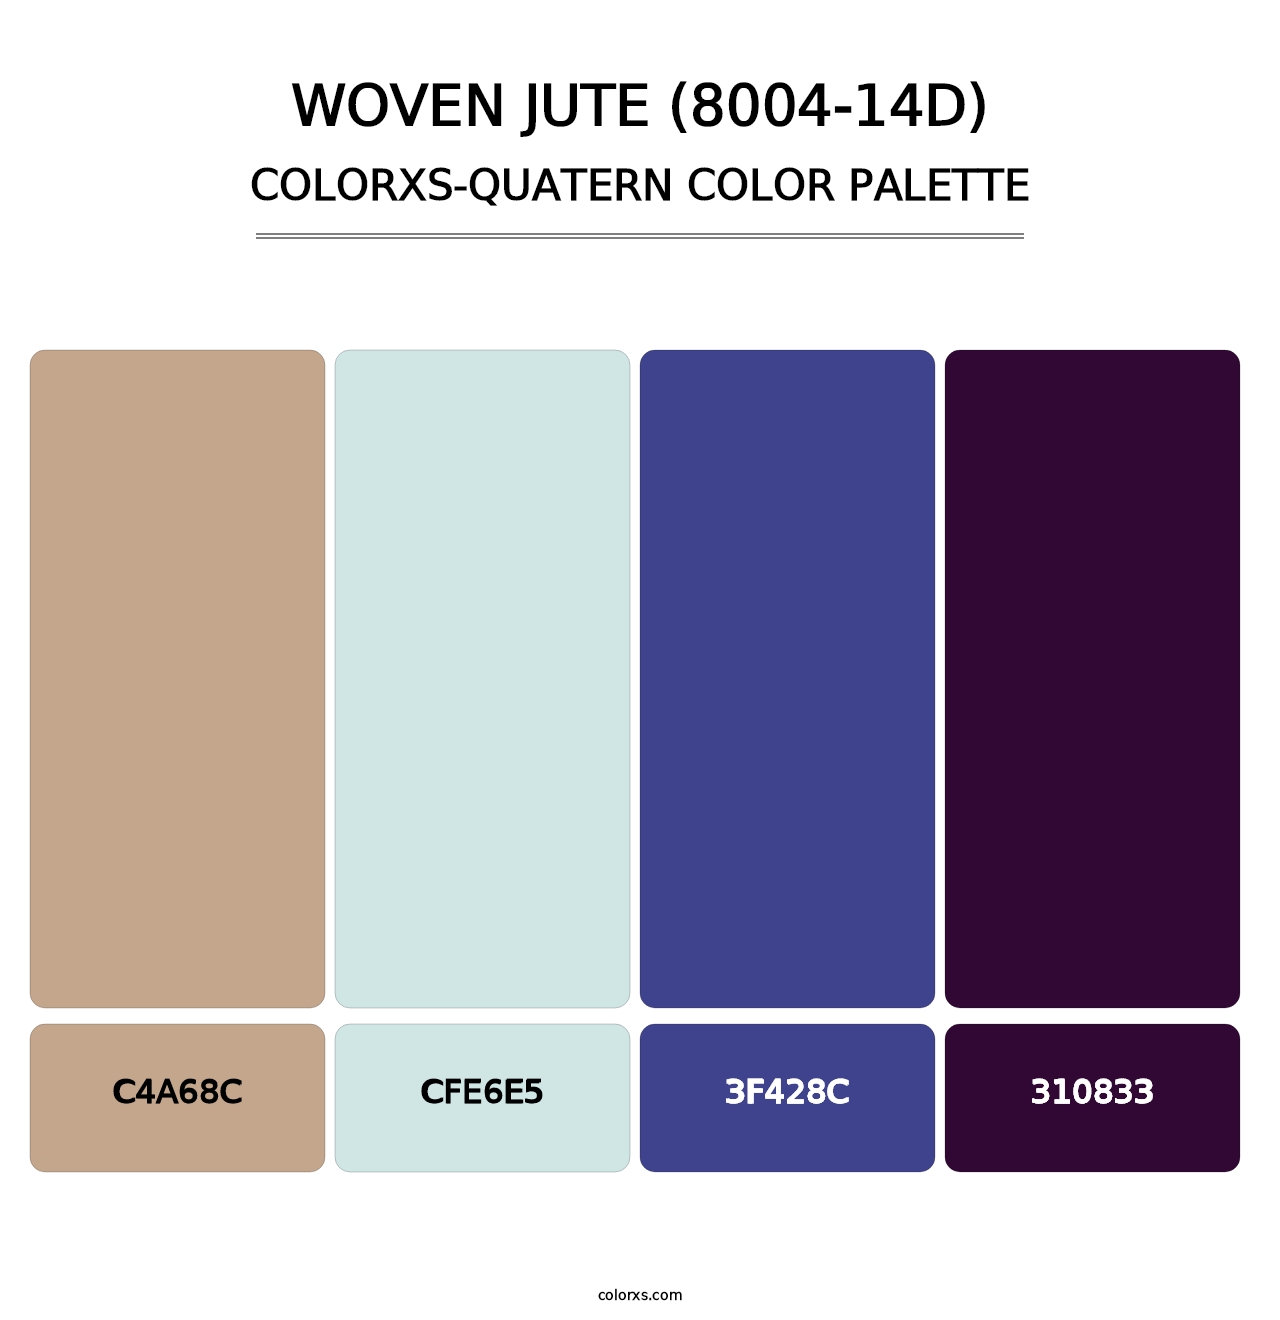 Woven Jute (8004-14D) - Colorxs Quatern Palette